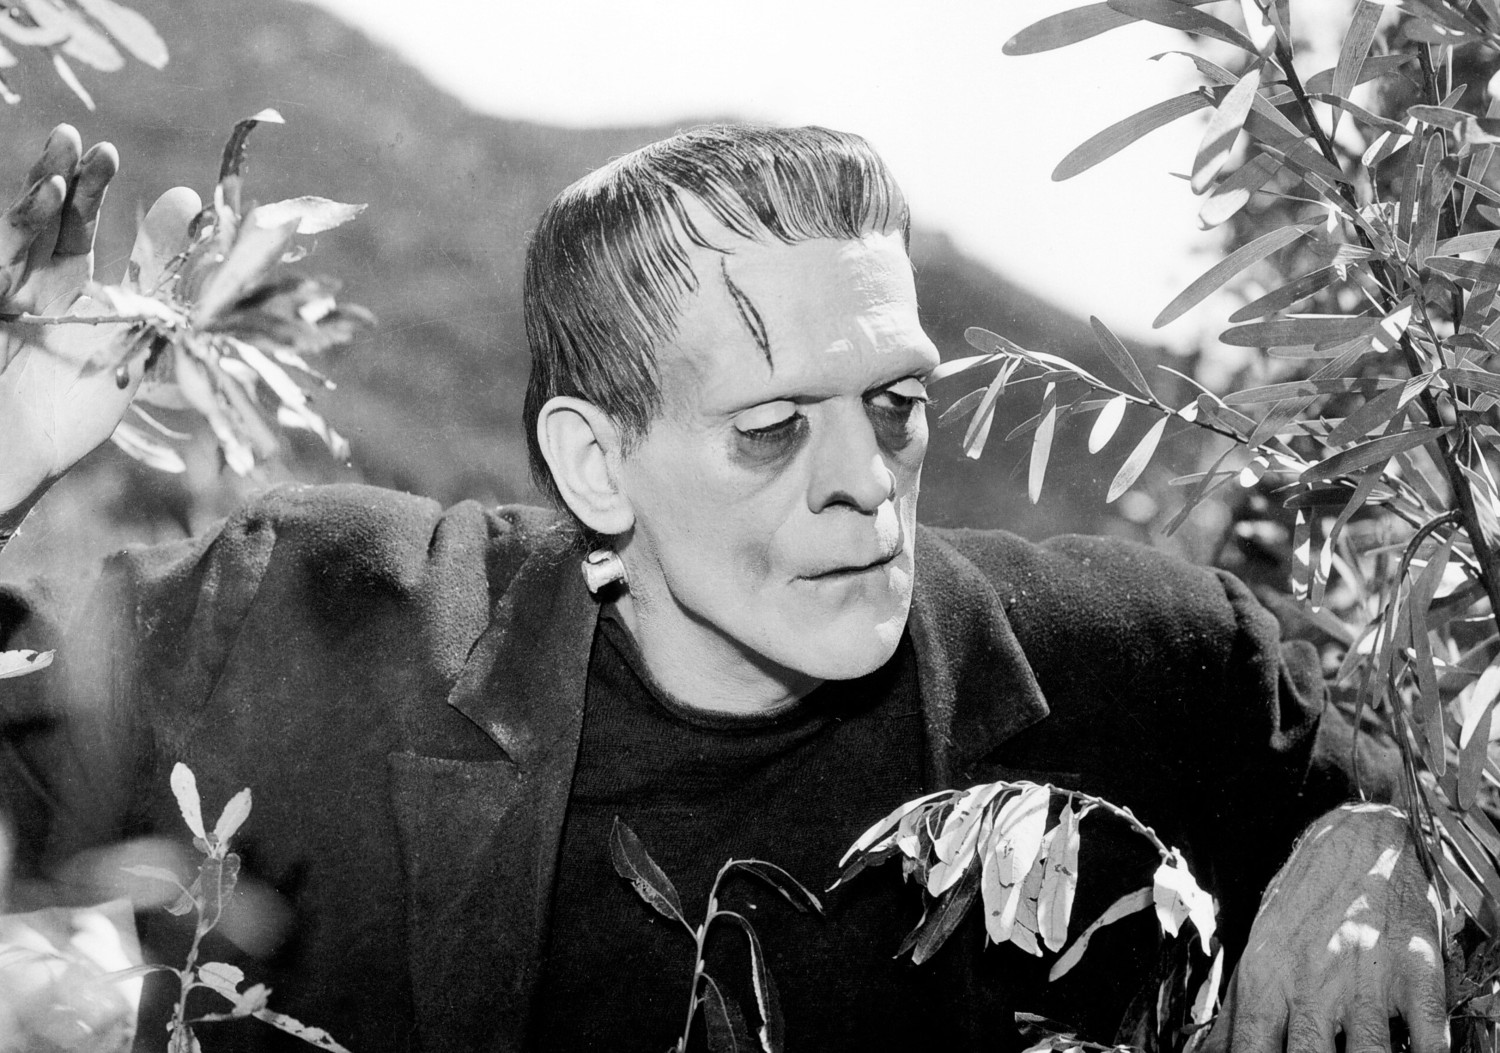 Frankenstein, et l’Homme créa la Bête